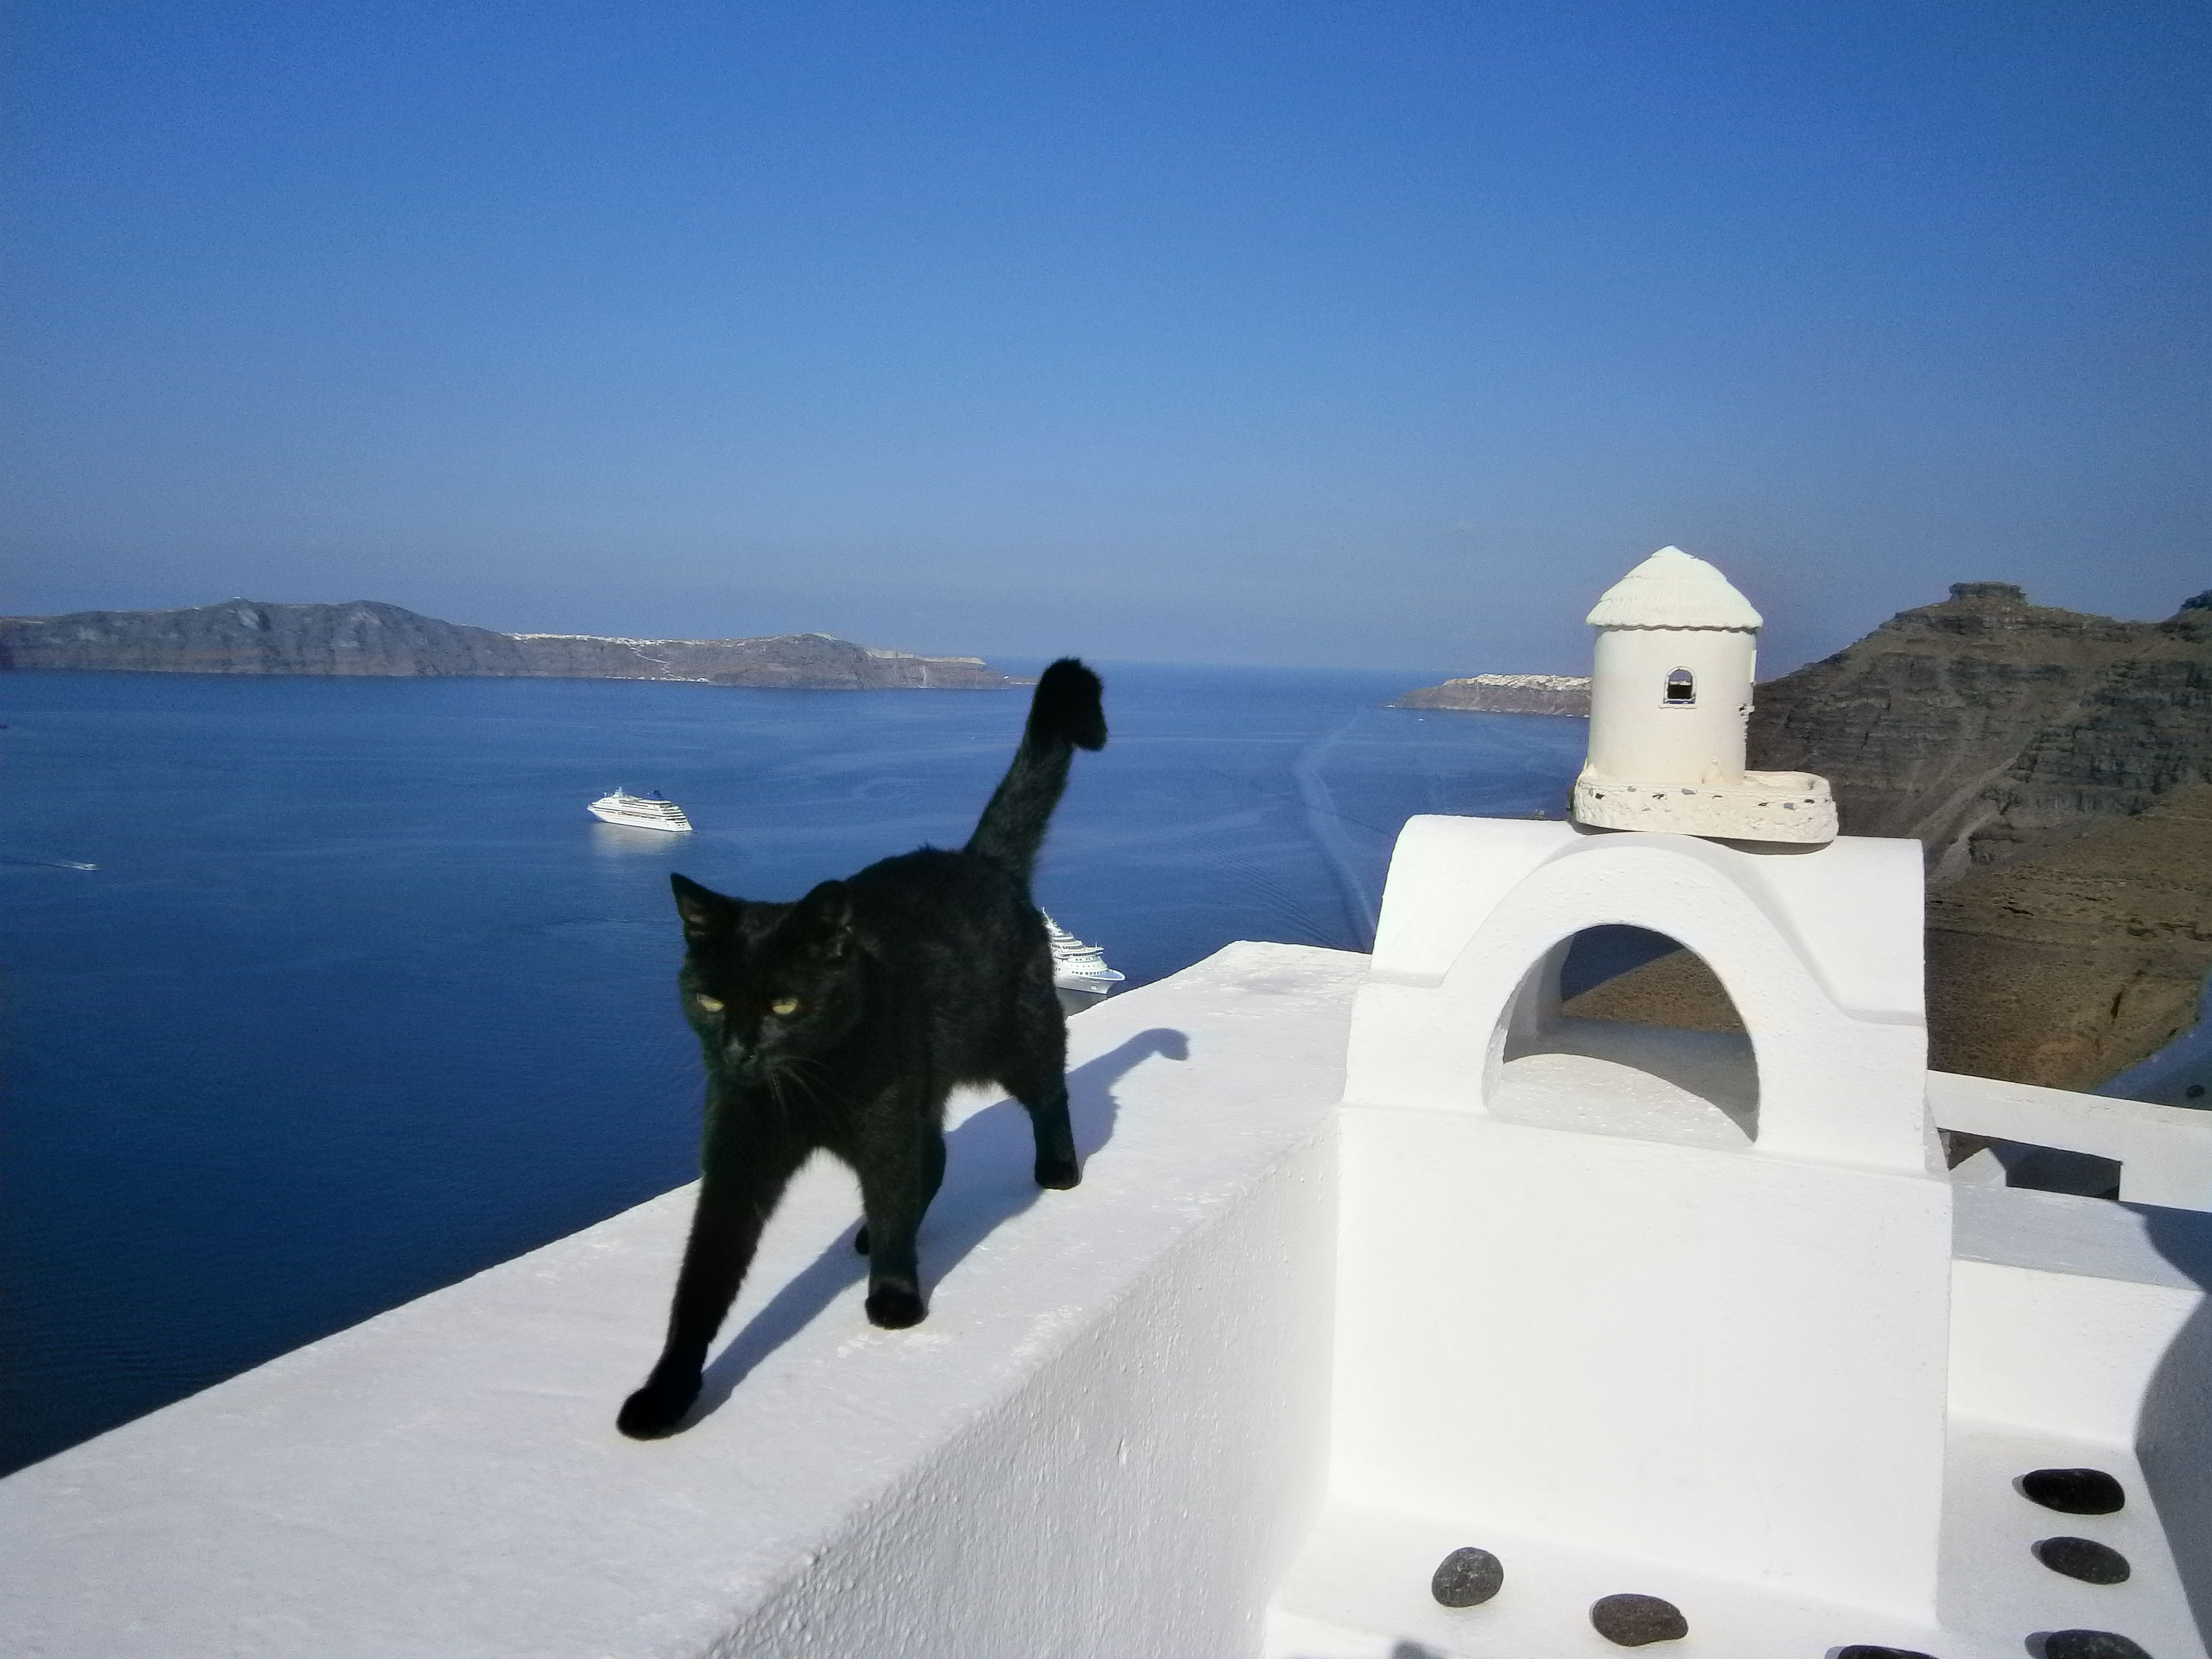 青い空の下での～んびり♪猫たちが暮らすギリシャの街